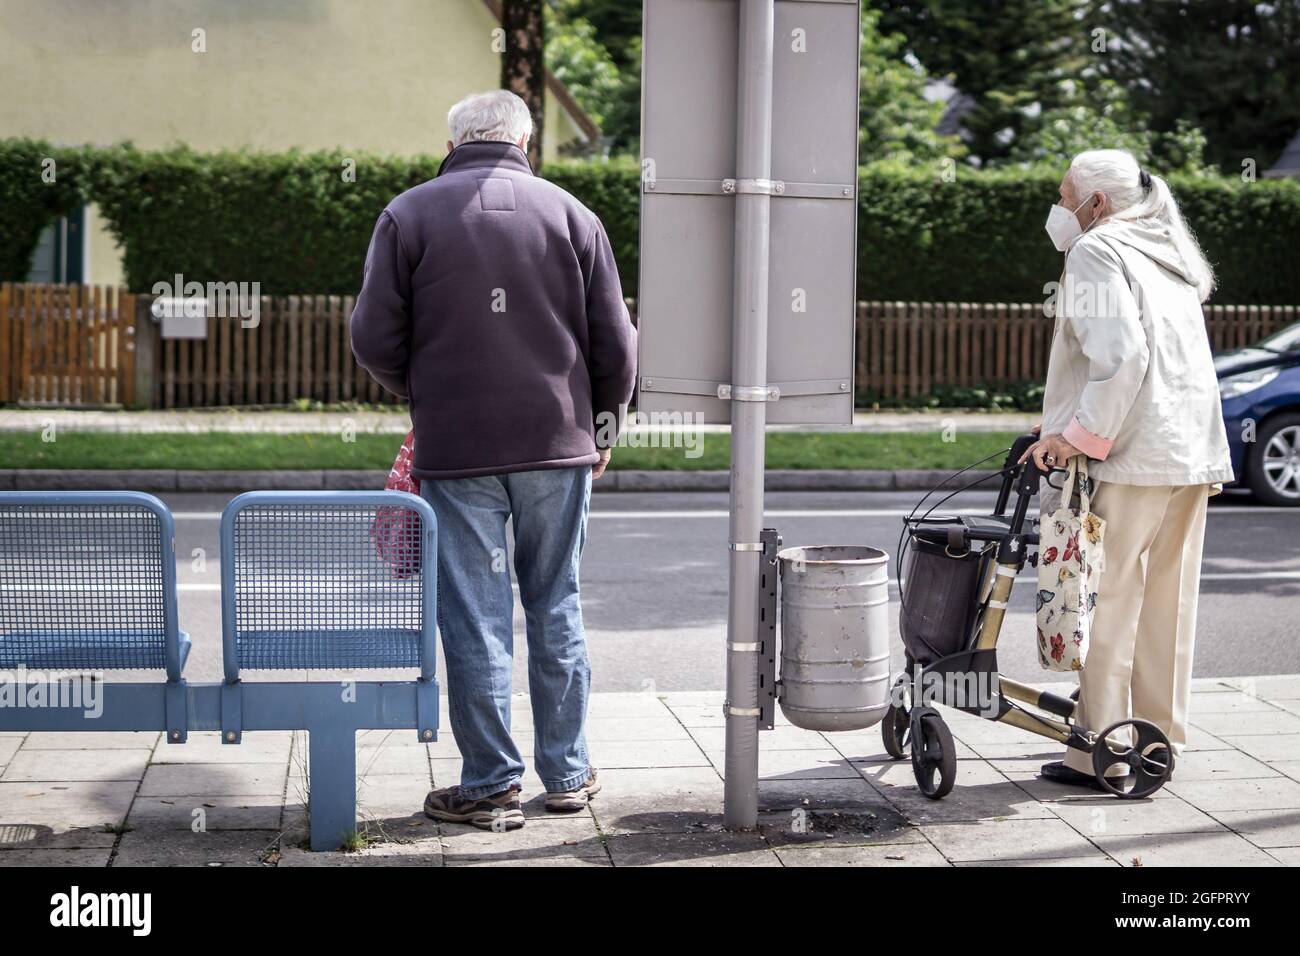 Zwei alte Leute warten am Busbahnhof auf die Ankunft des Busses. Die Frau hat einen wandenden Collator als Stütze. Stockfoto